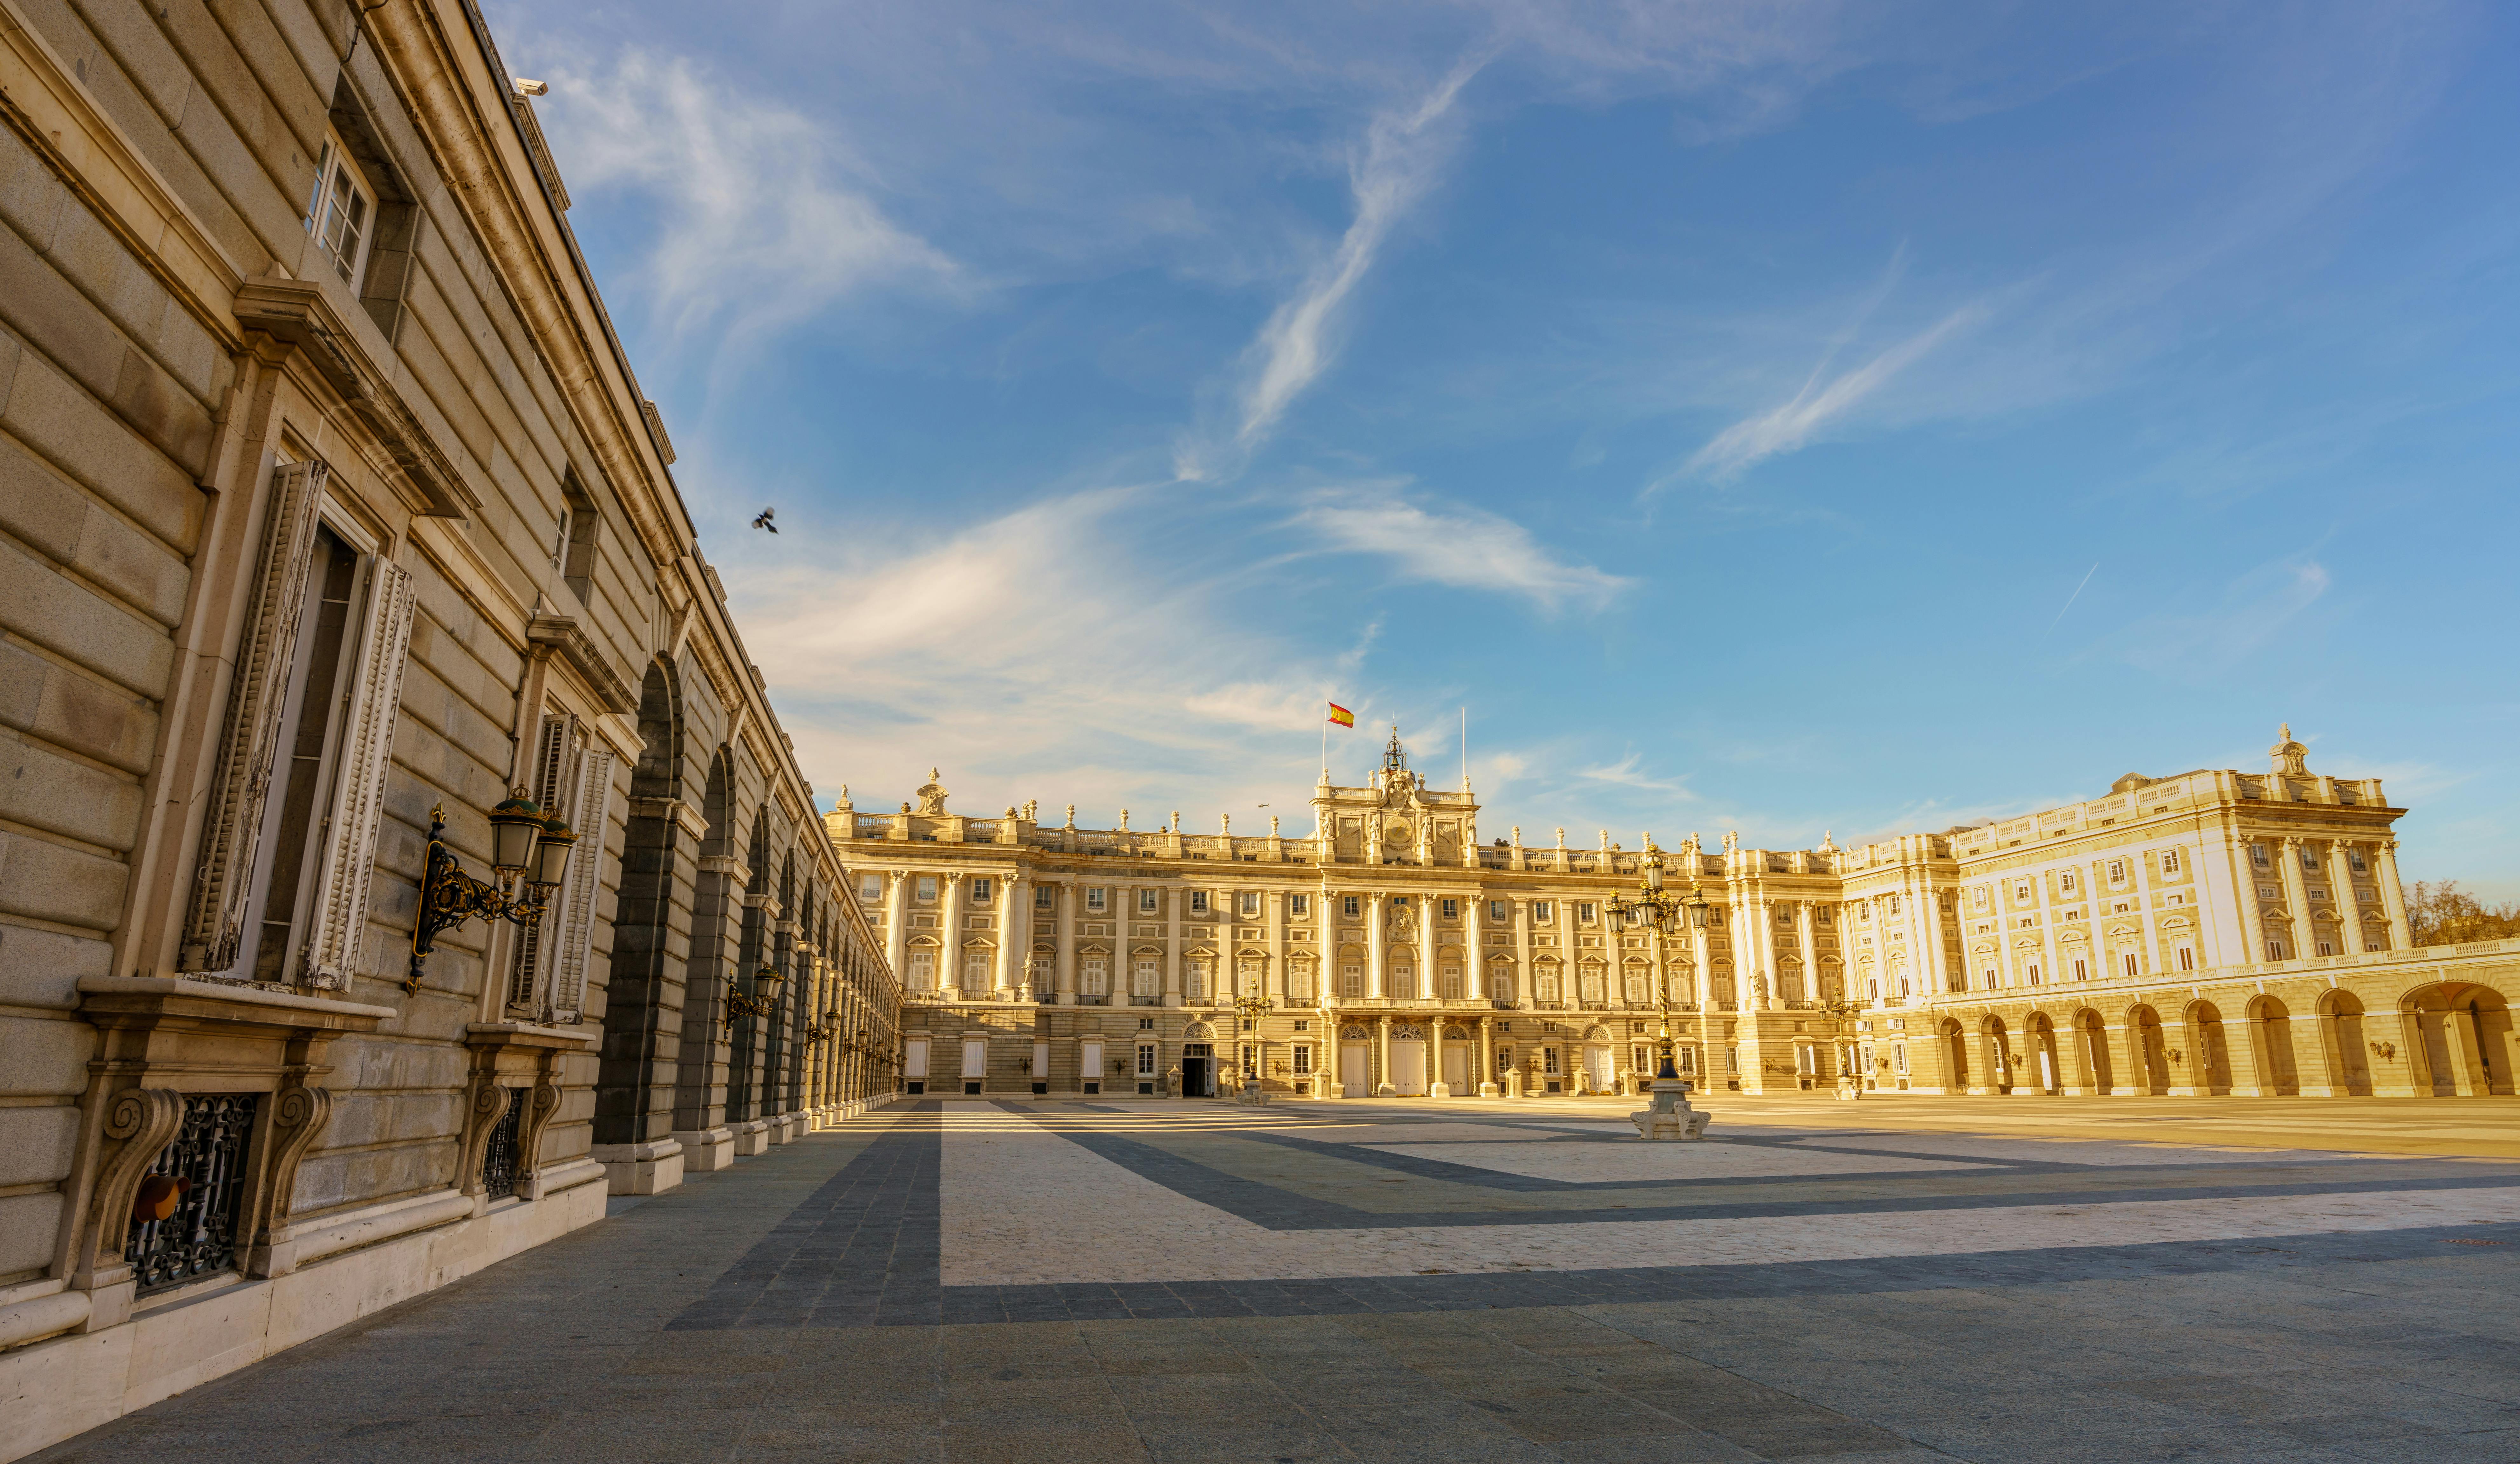 Visita guiada pelo Palácio Real de Madrid e pelo Parque do Retiro com acesso preferencial